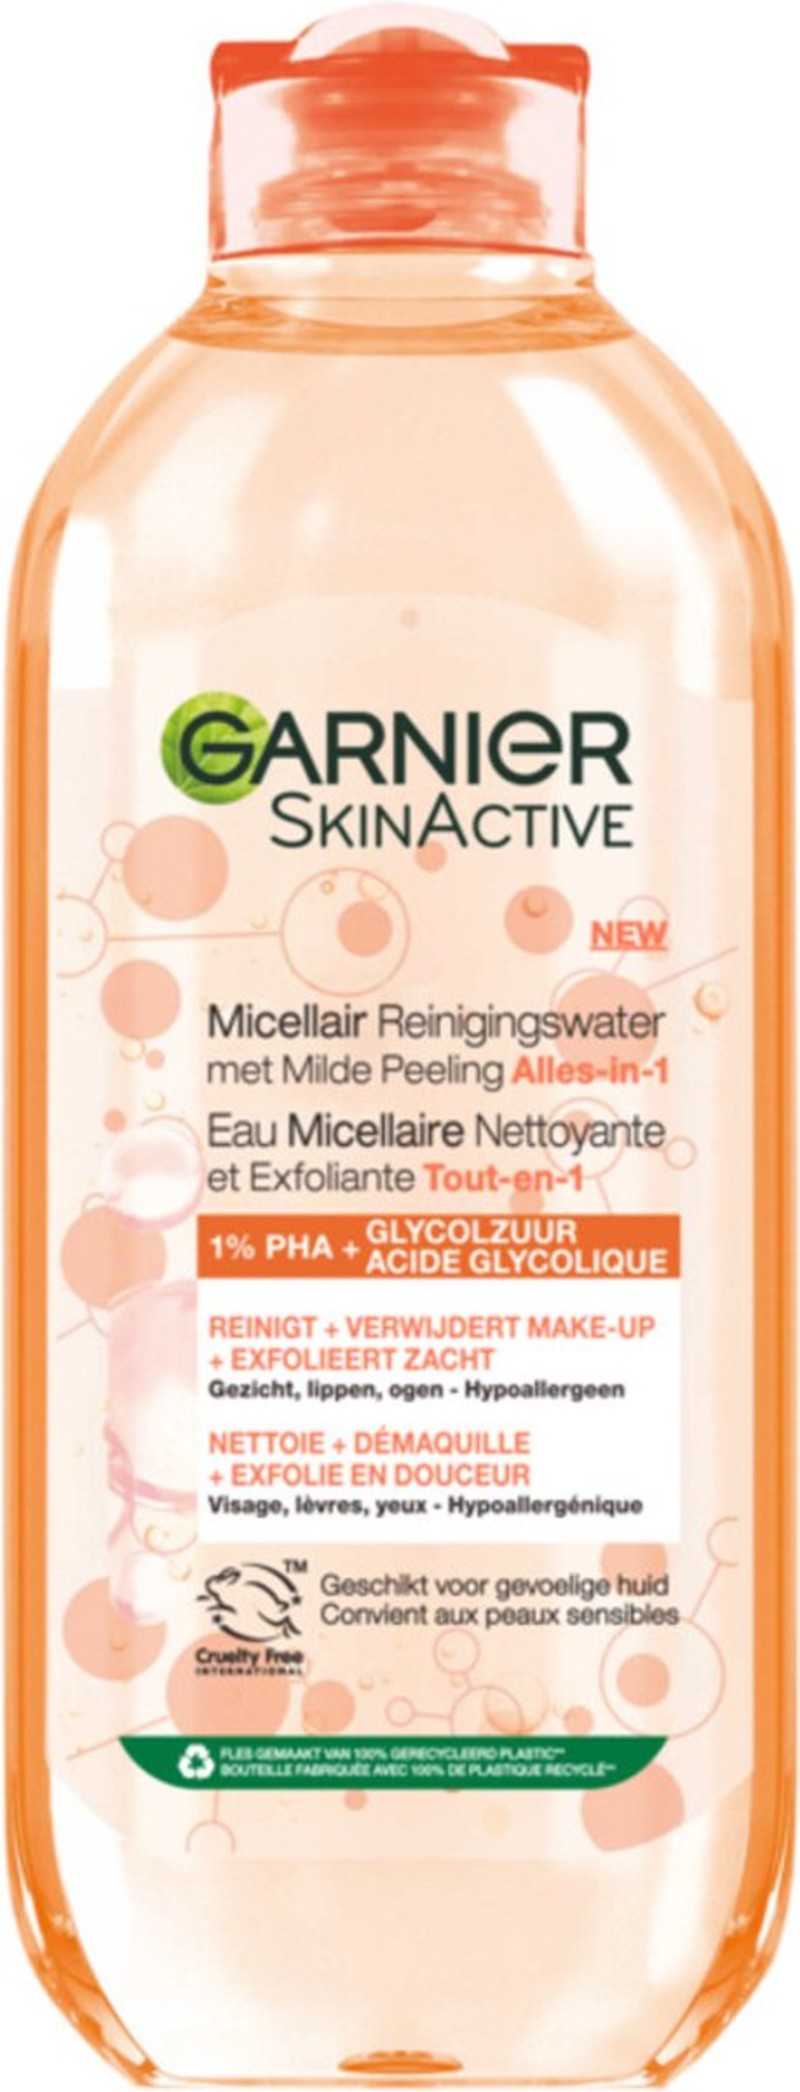 Garnier SkinActive Micellair Reinigingswater met Peeling Alles-in-1 400 ml | Garnier | - We Are Eves: honest reviews.